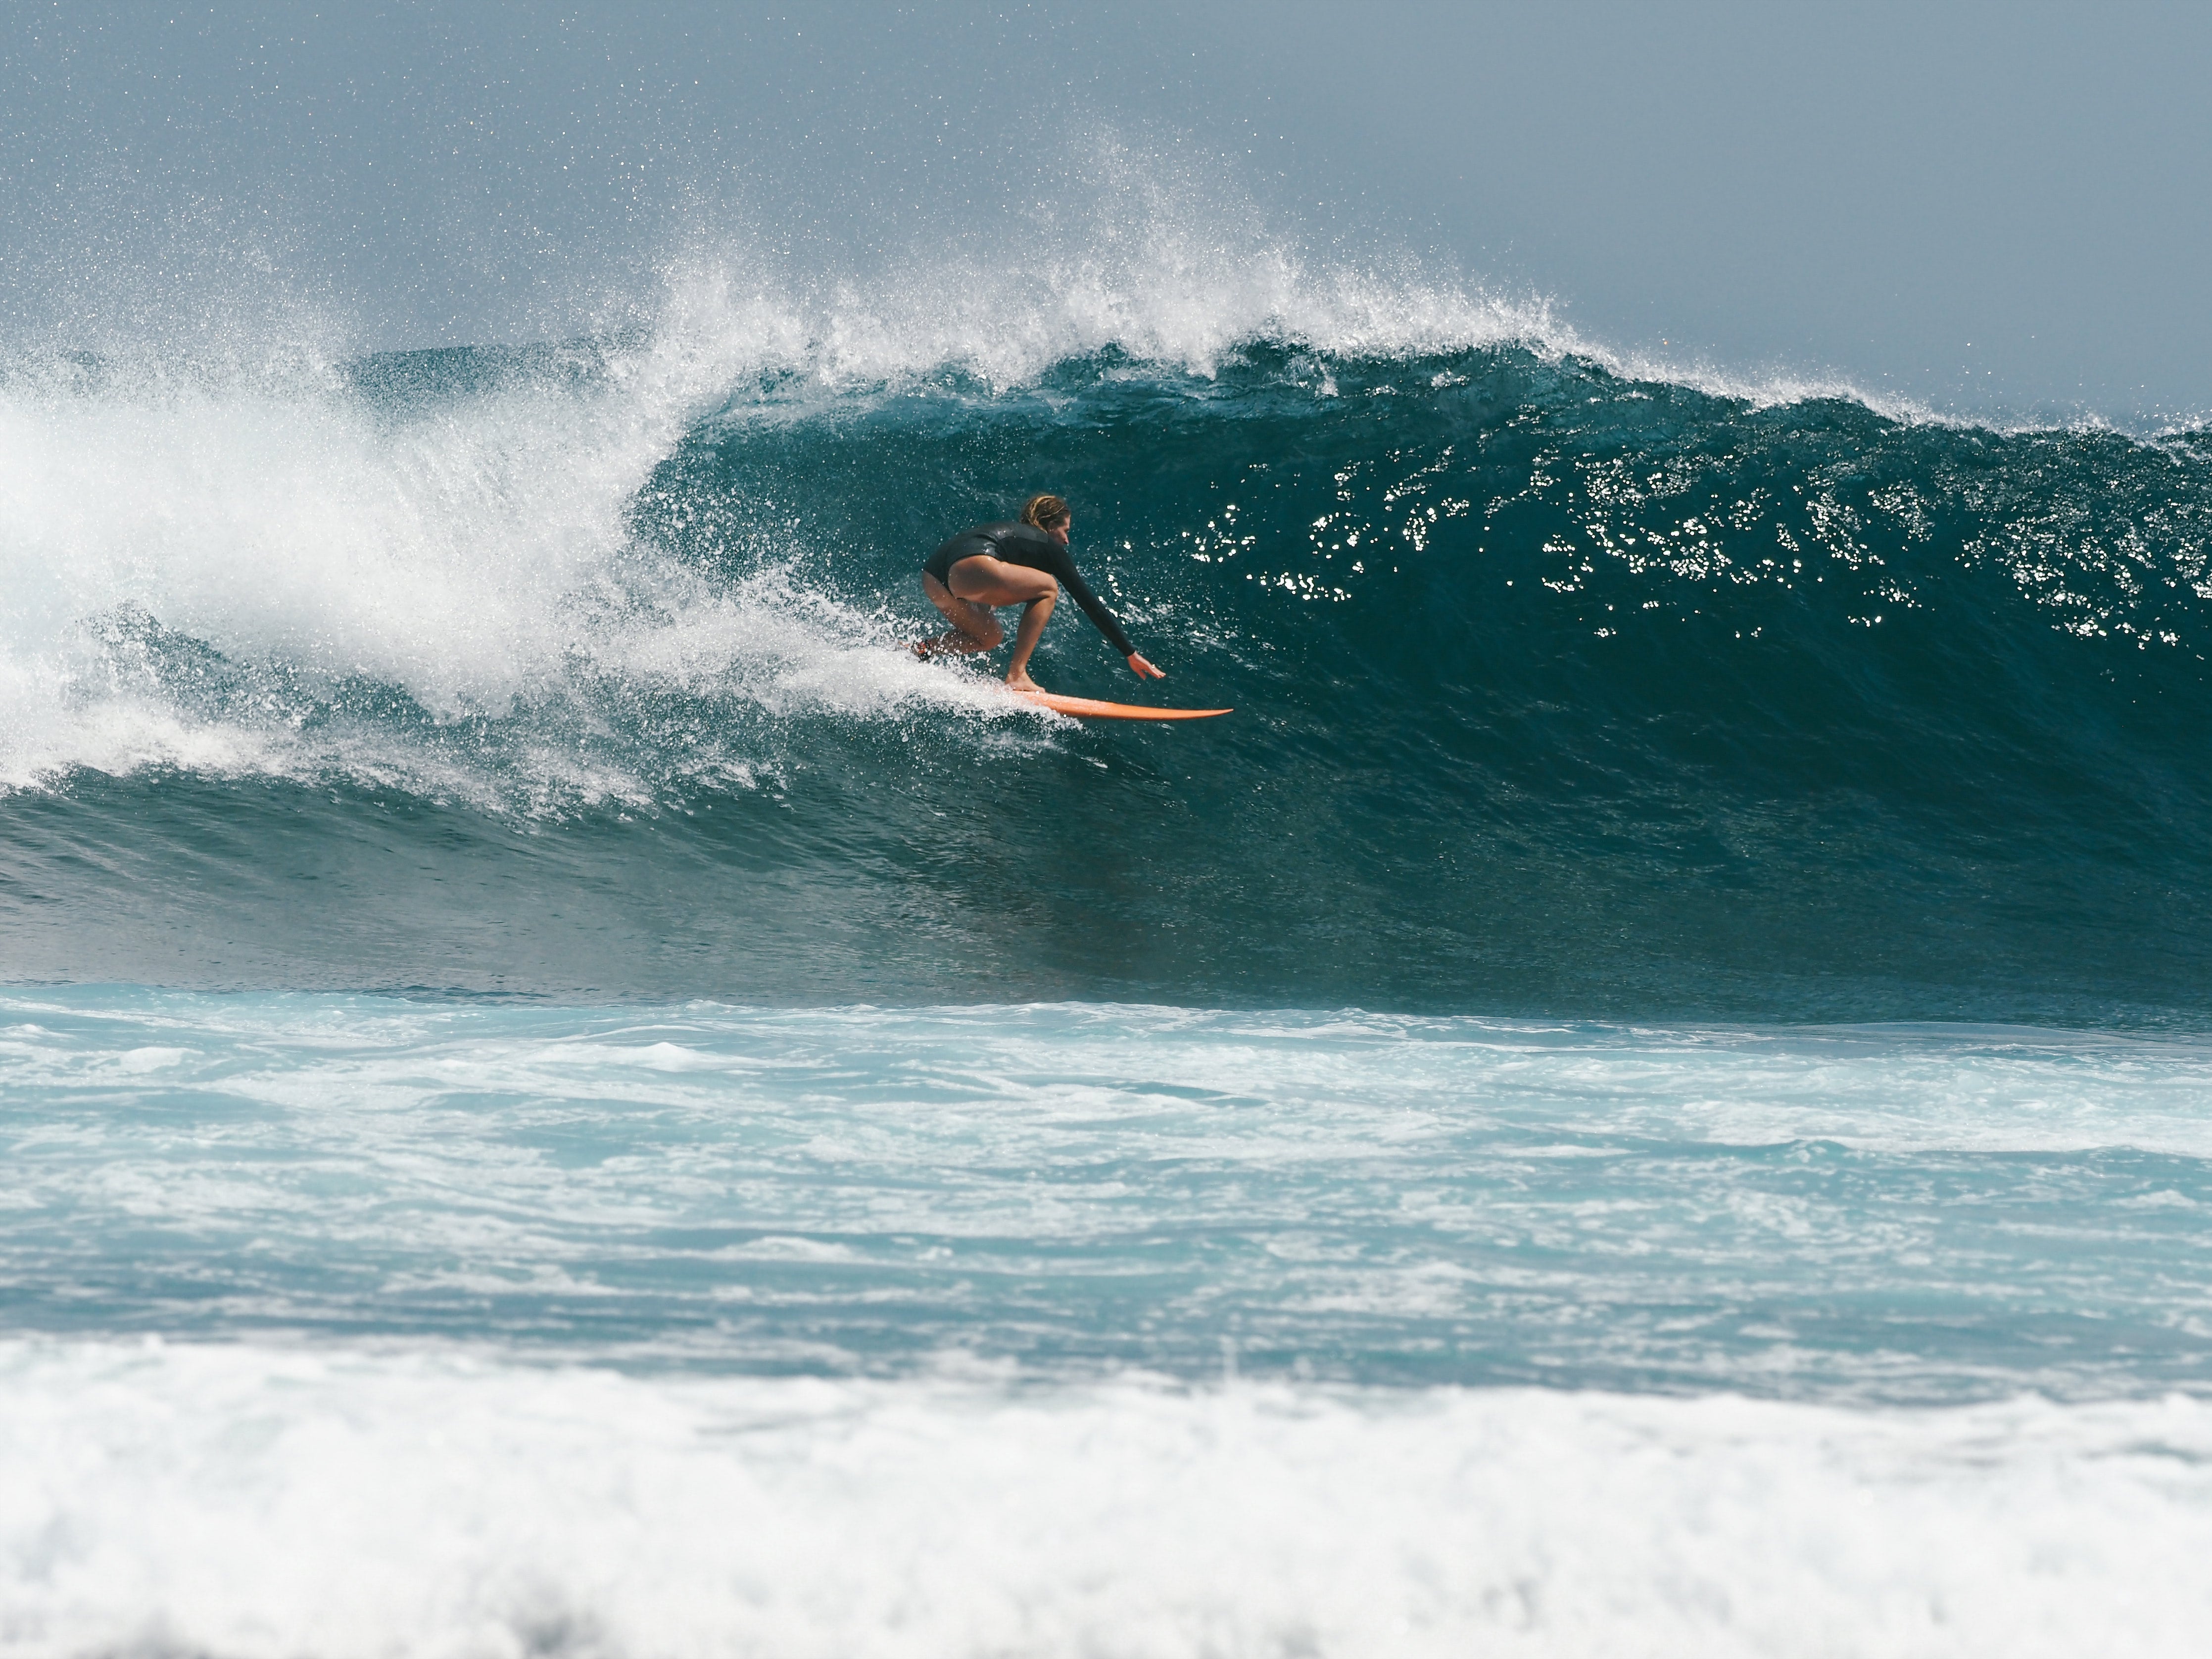 Cait surfer på en bølge på vej ind i tønden